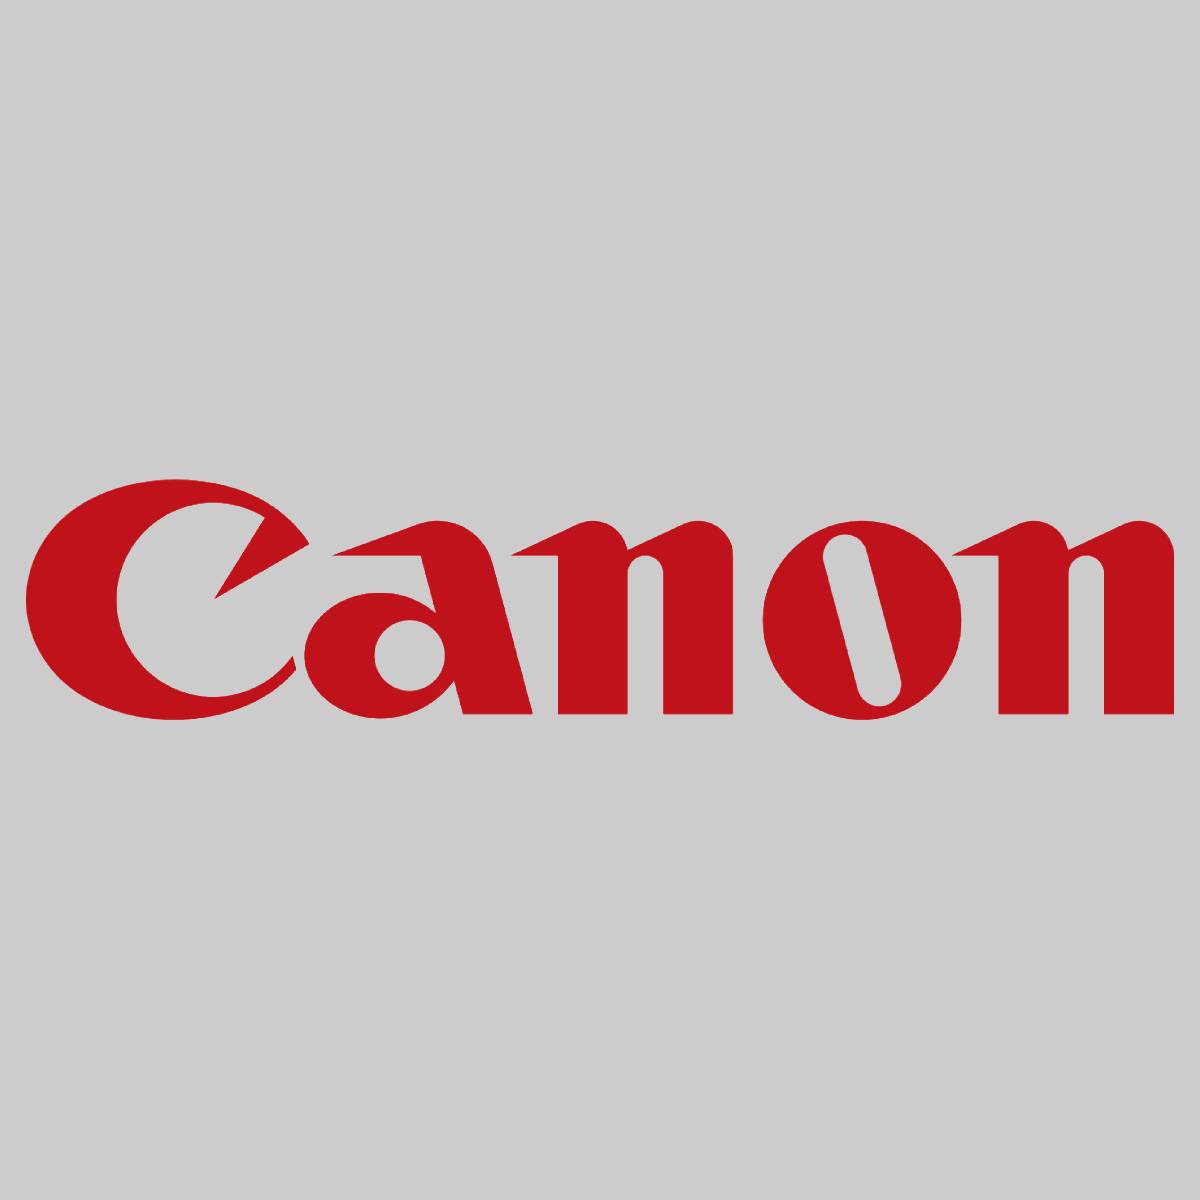 "Originele Canon C-EXV19 Toner Zwart 0397B002 imagePRESS C 1 imagePRESS C 1 Plus